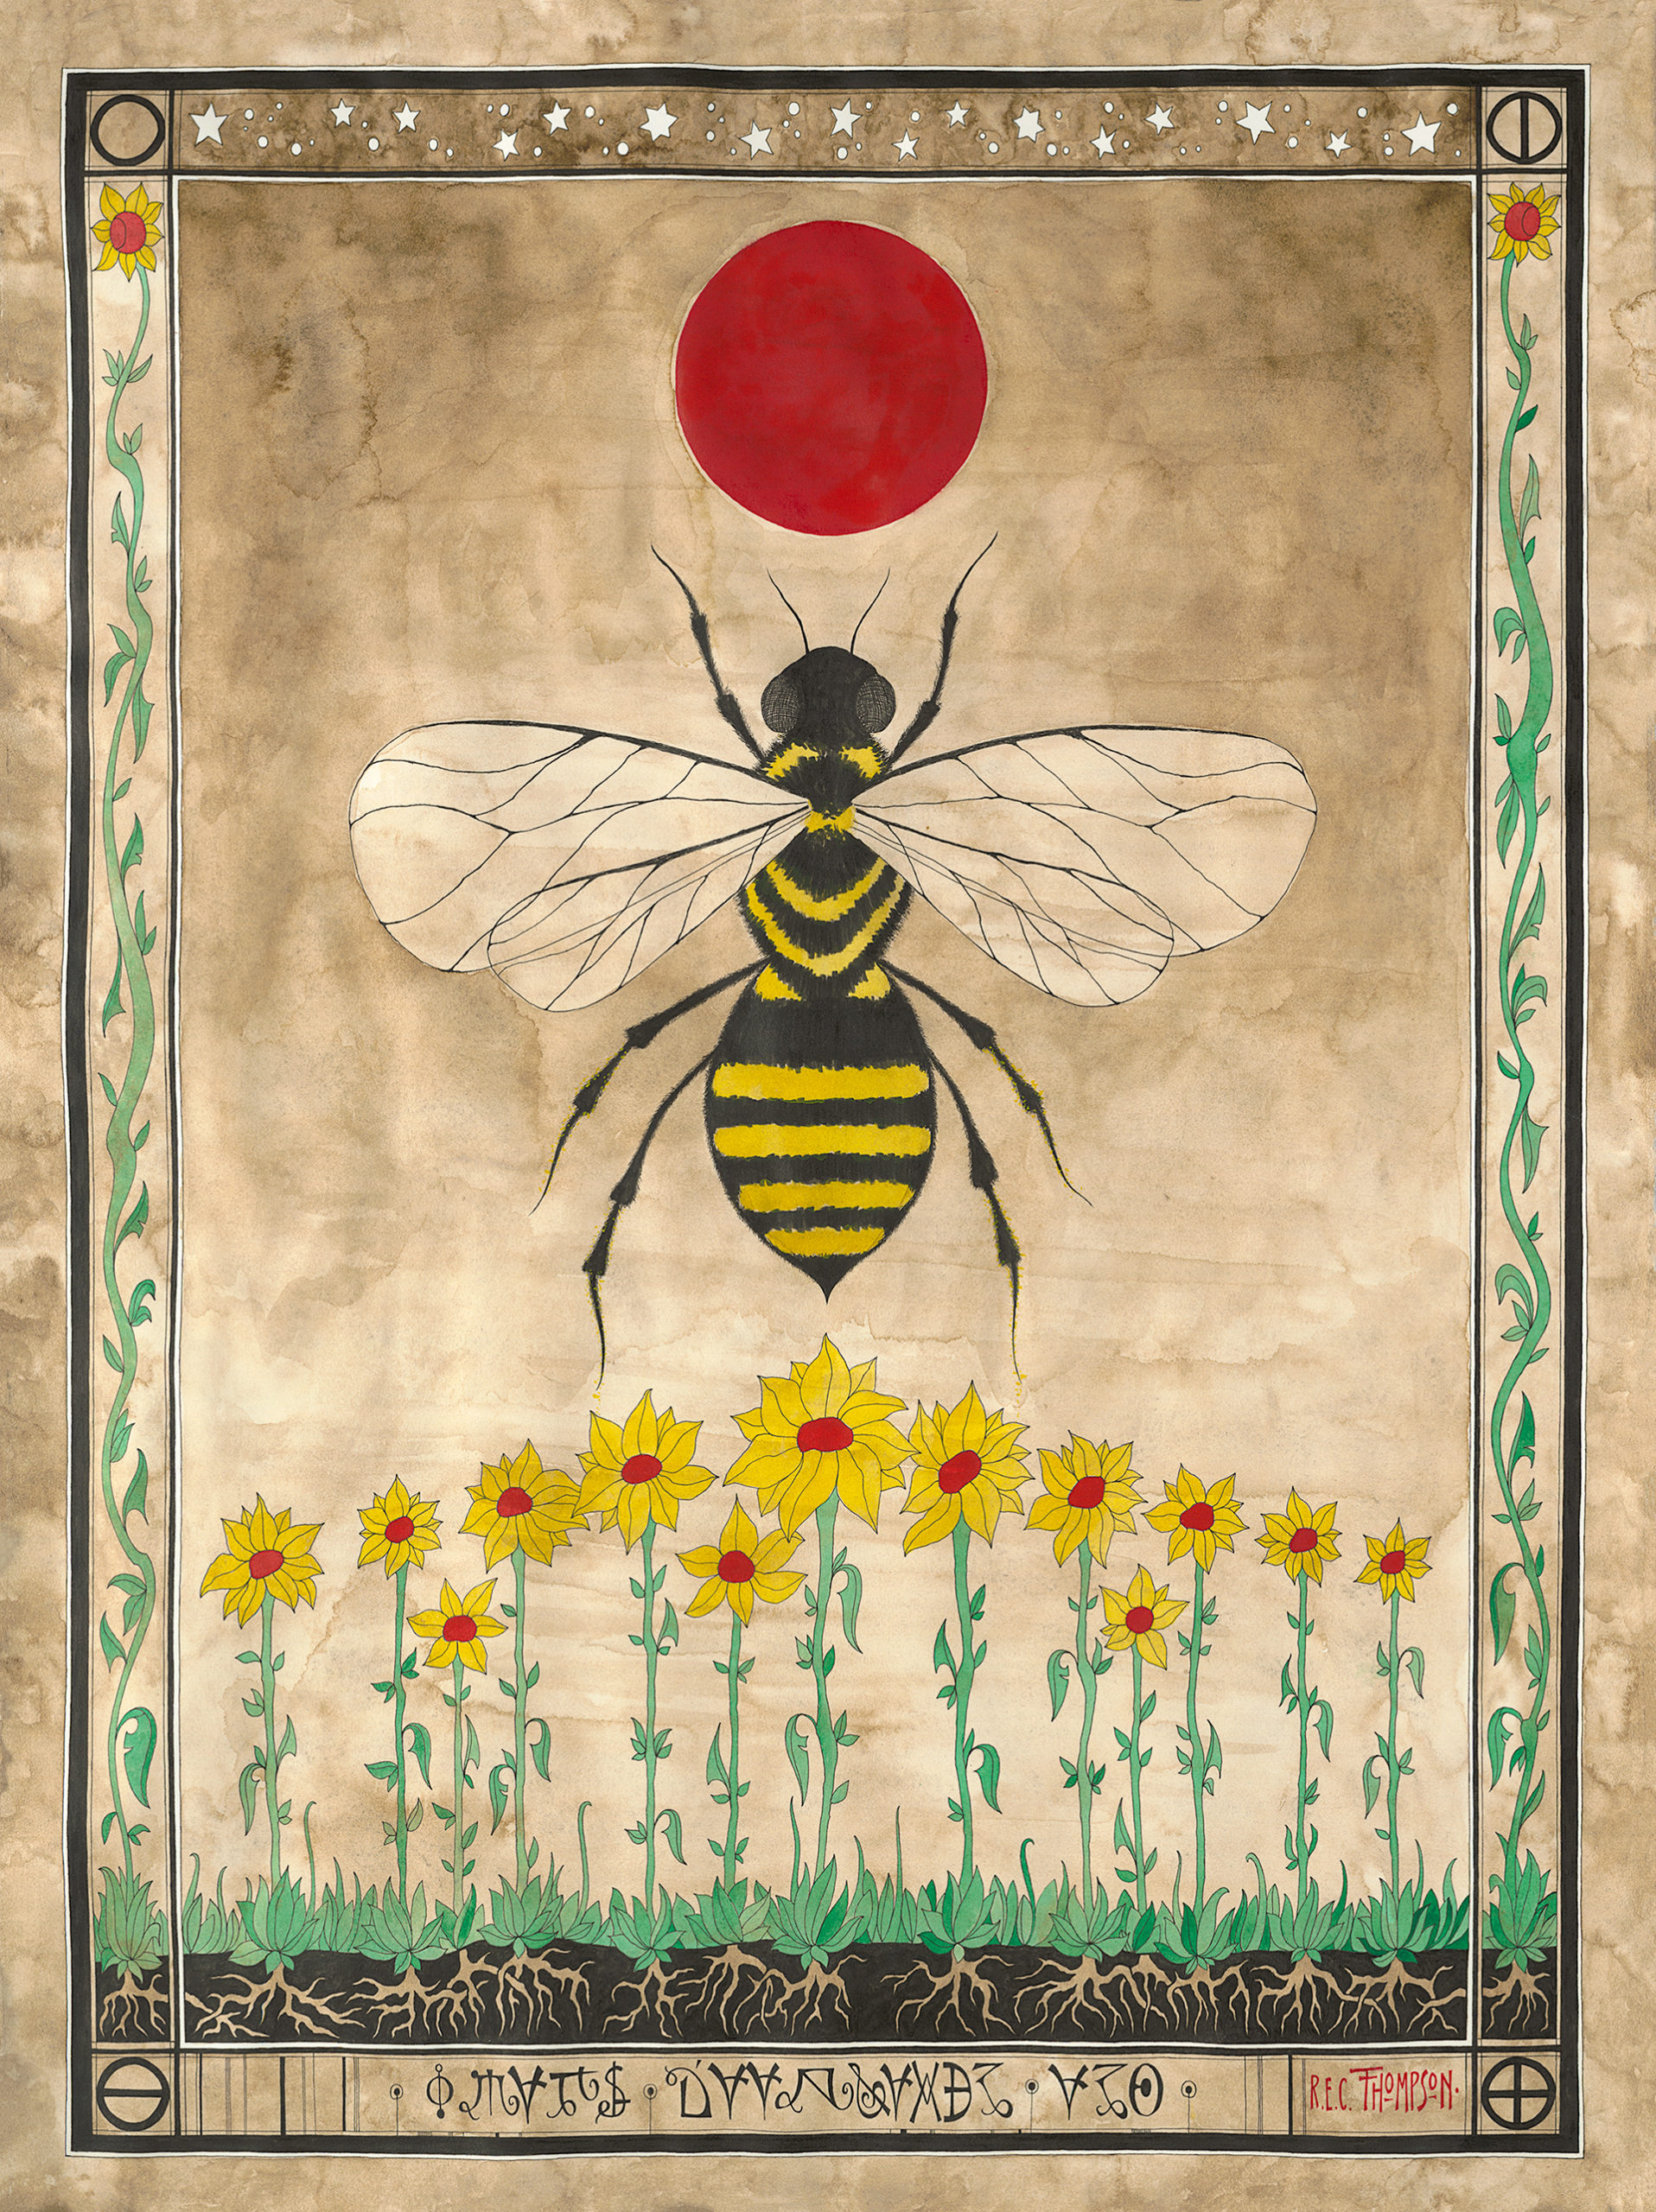 R.E.C. Chipper Thompson, The Honeybee's Dream